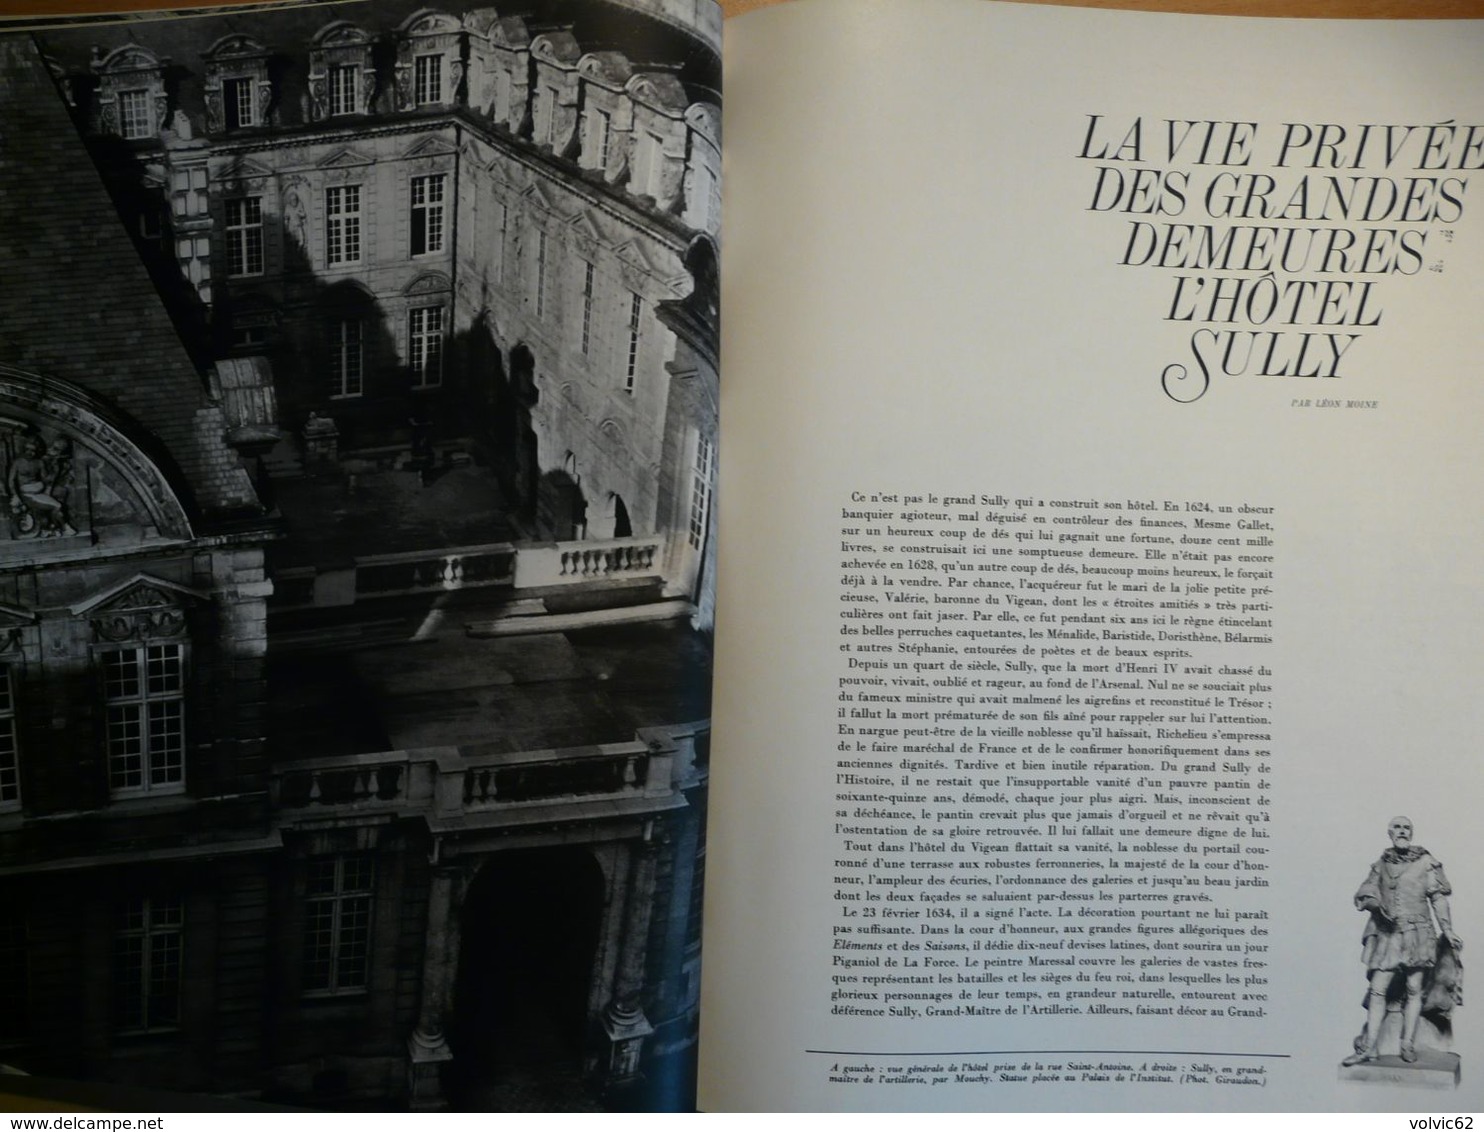 Plaisir de france 1966 ile de la réunion hotel sully paris hotel à neuilly chalet méribel les allues écrivains et exil